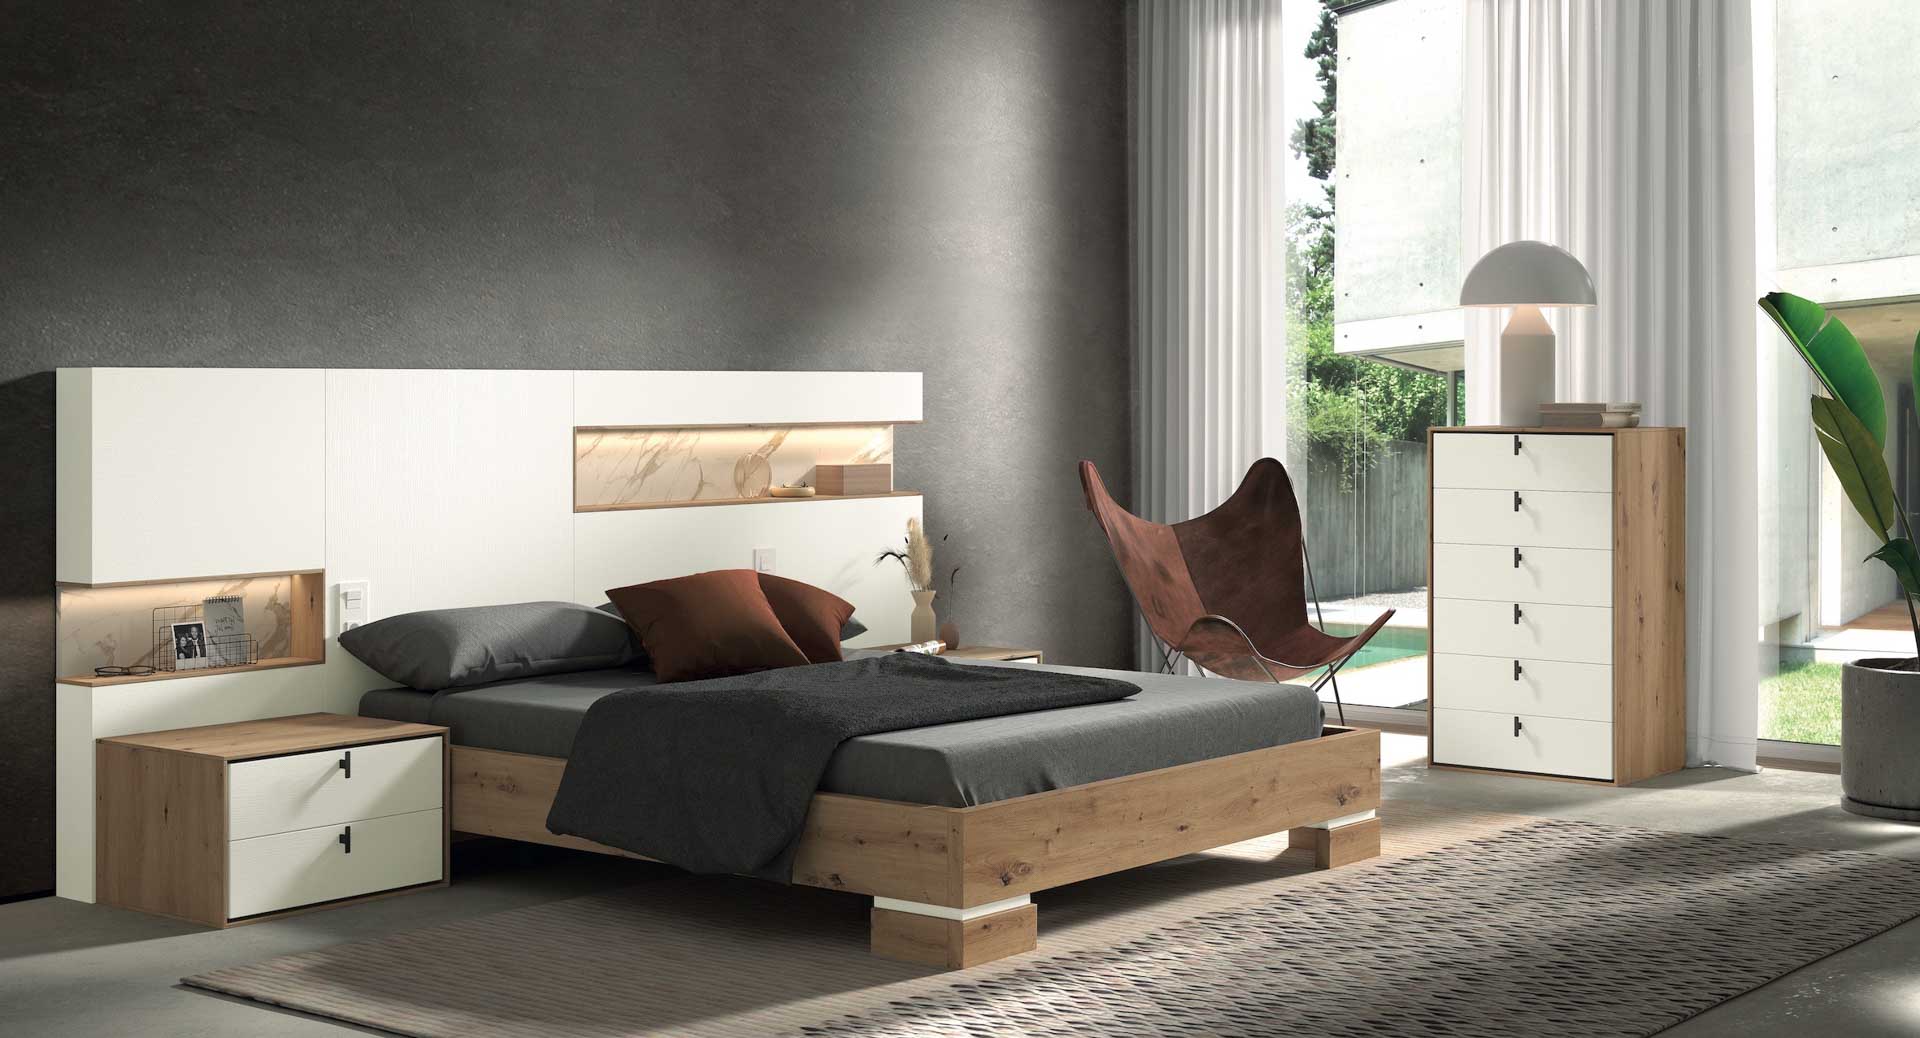 Diseño de mobiliario de dormitorio 62